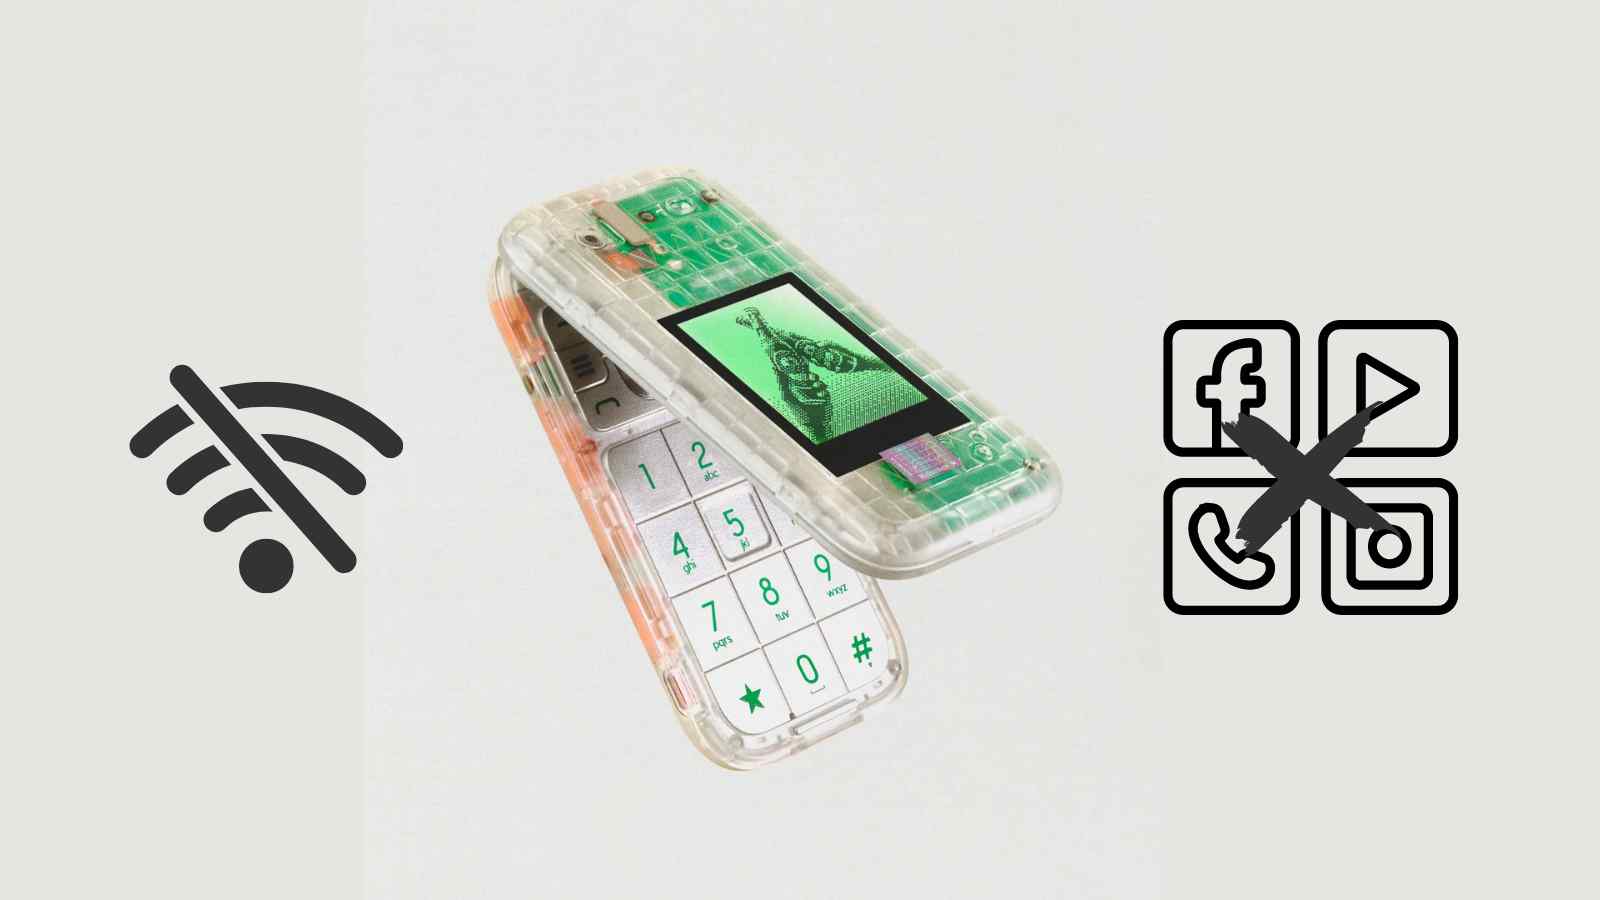 Il Boring Phone di Heineken e Bodega è l'esempio perfetto della nuova tendenza all'inversione tecnologica 